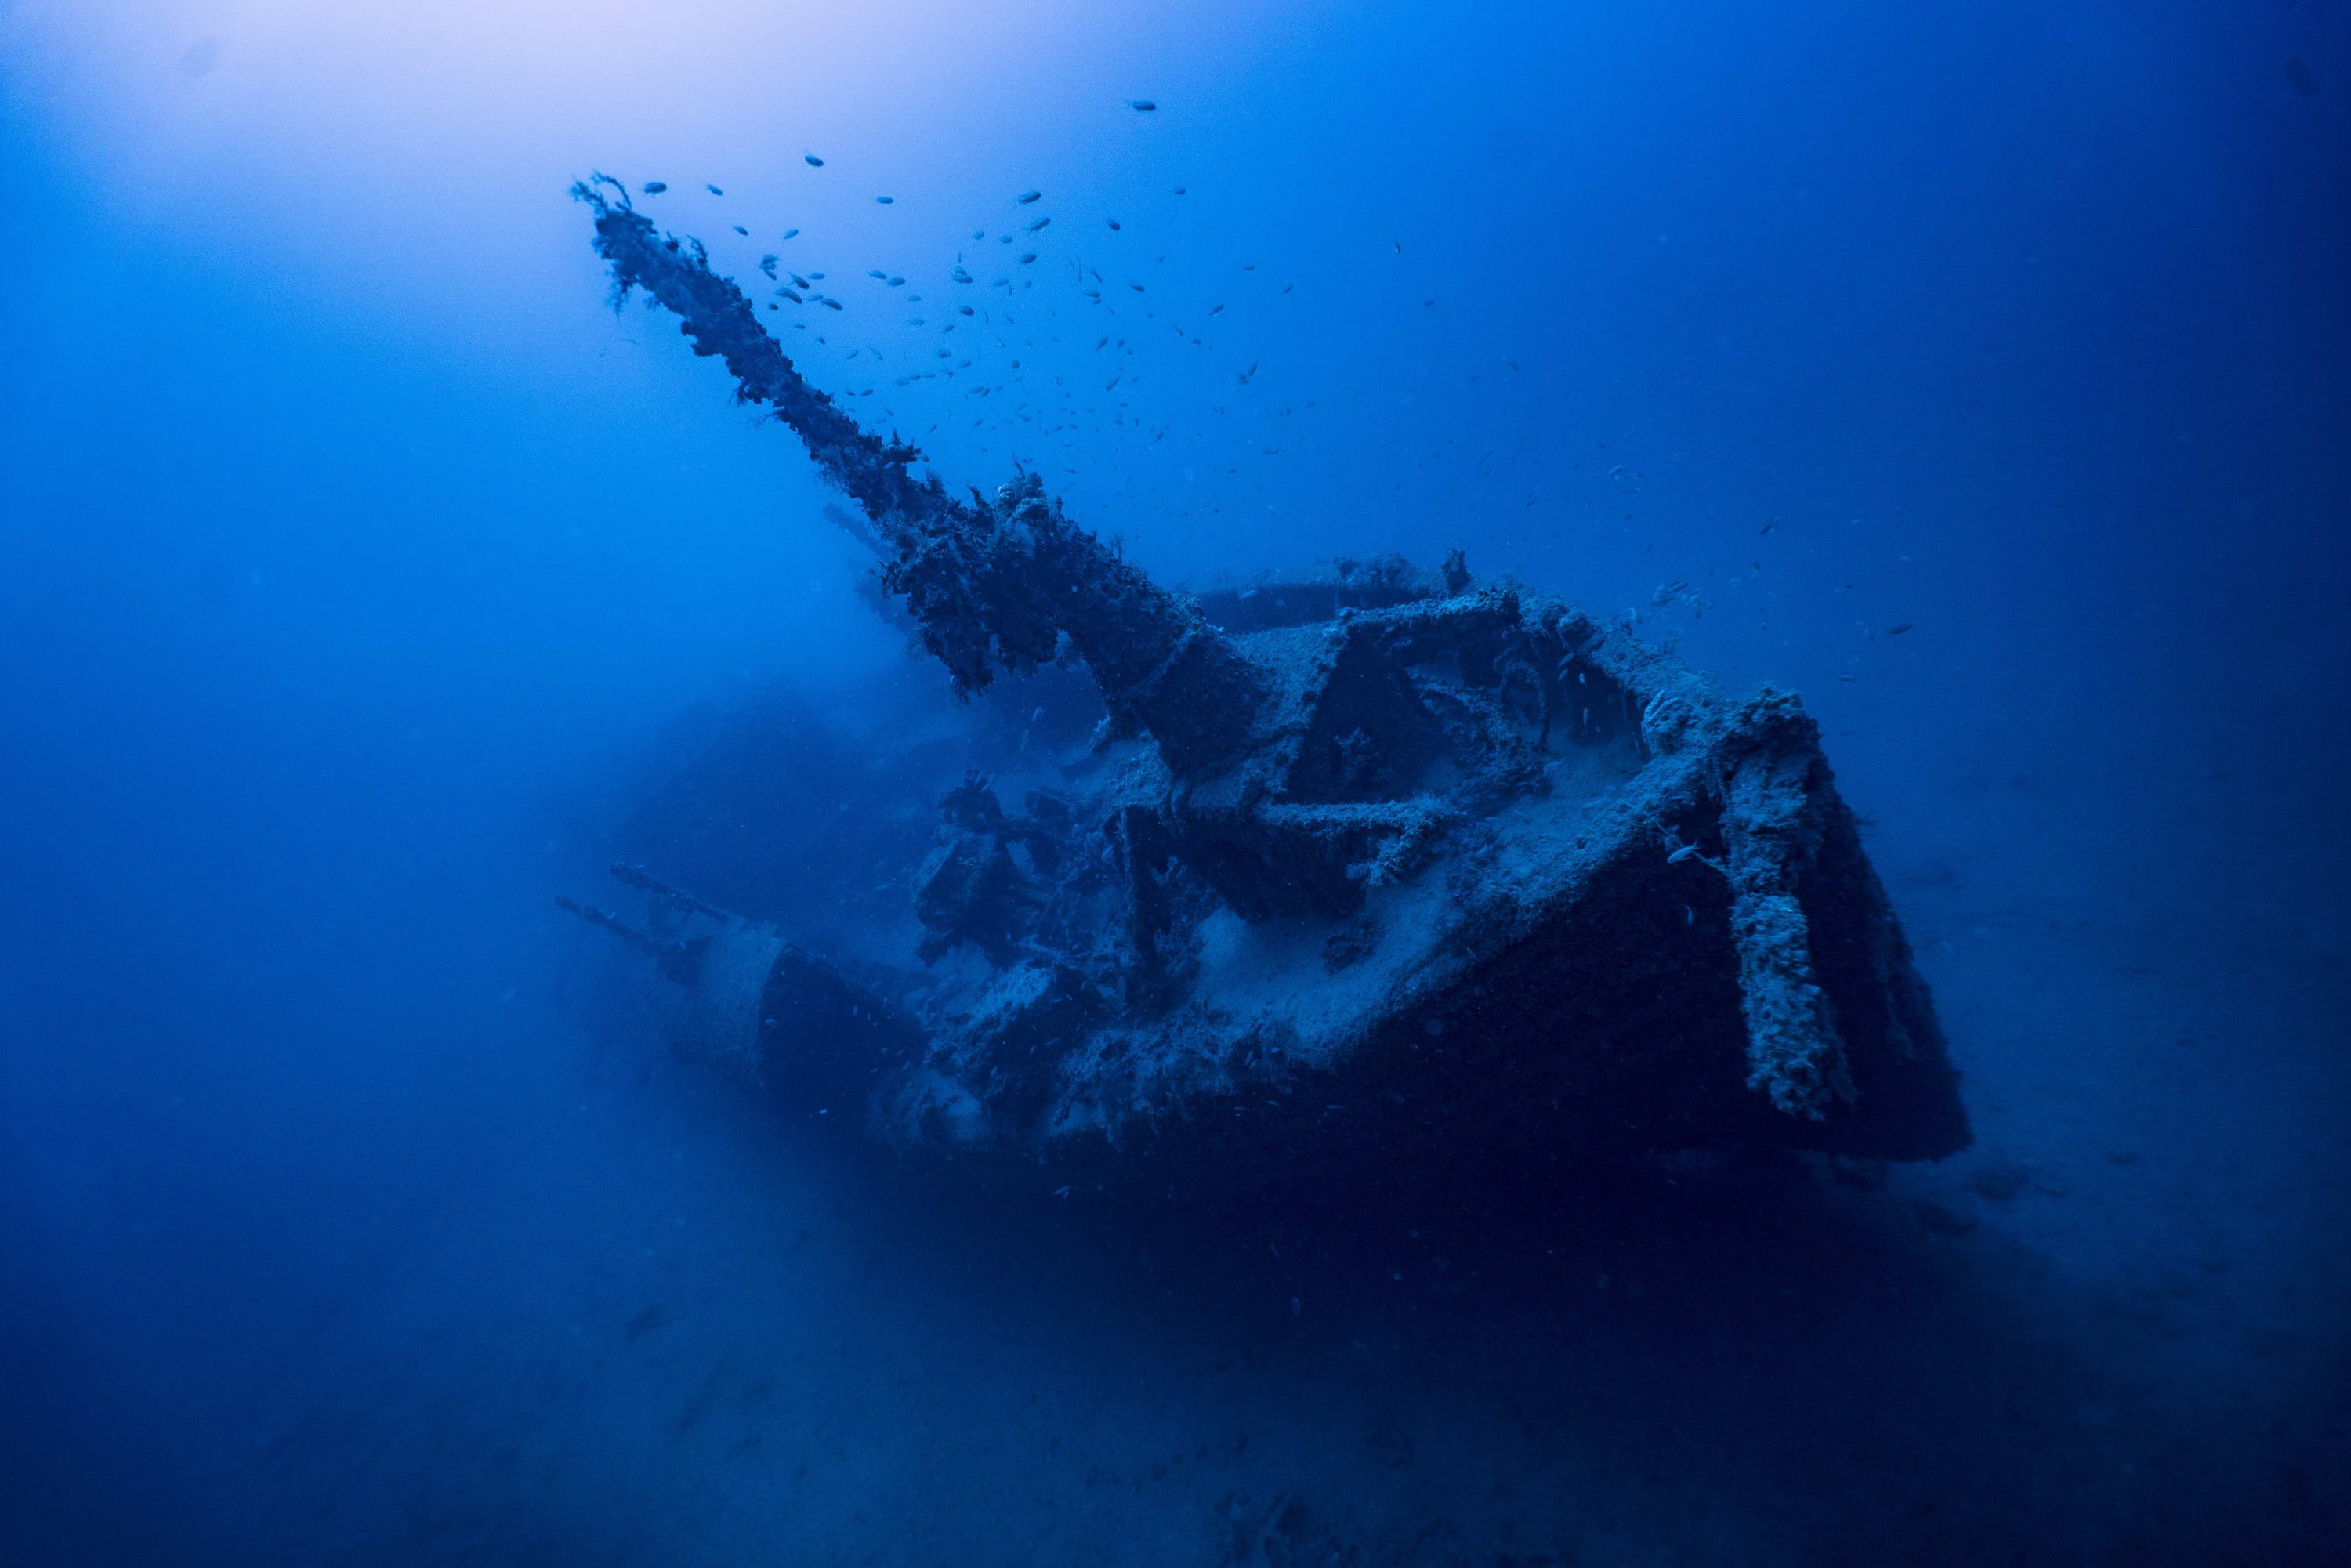 Kopie von Trusty Star_klein (c) HMS Trusty Star  (c) Heritage Malta Wreck Dives